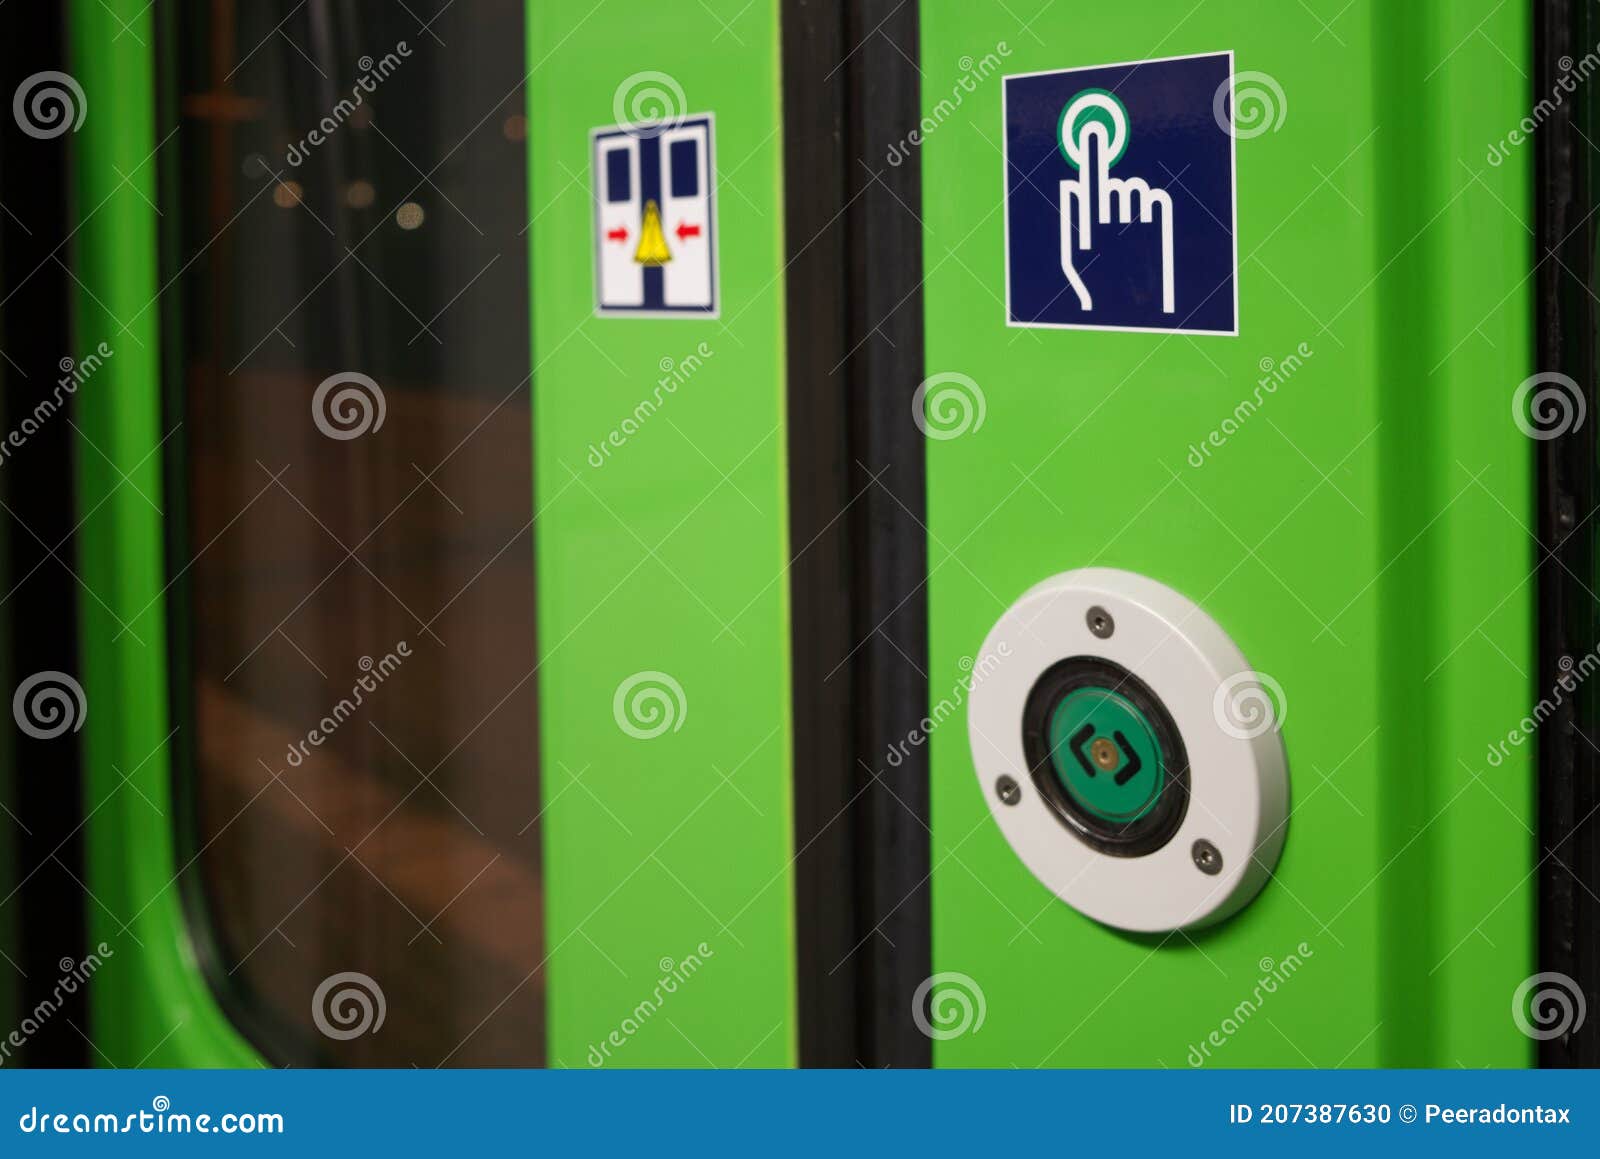 Zielony Przycisk Do Otwierania Drzwi W Pociągach. Zdjęcie Stock - Obraz  złożonej z palec, wyjście: 207387630